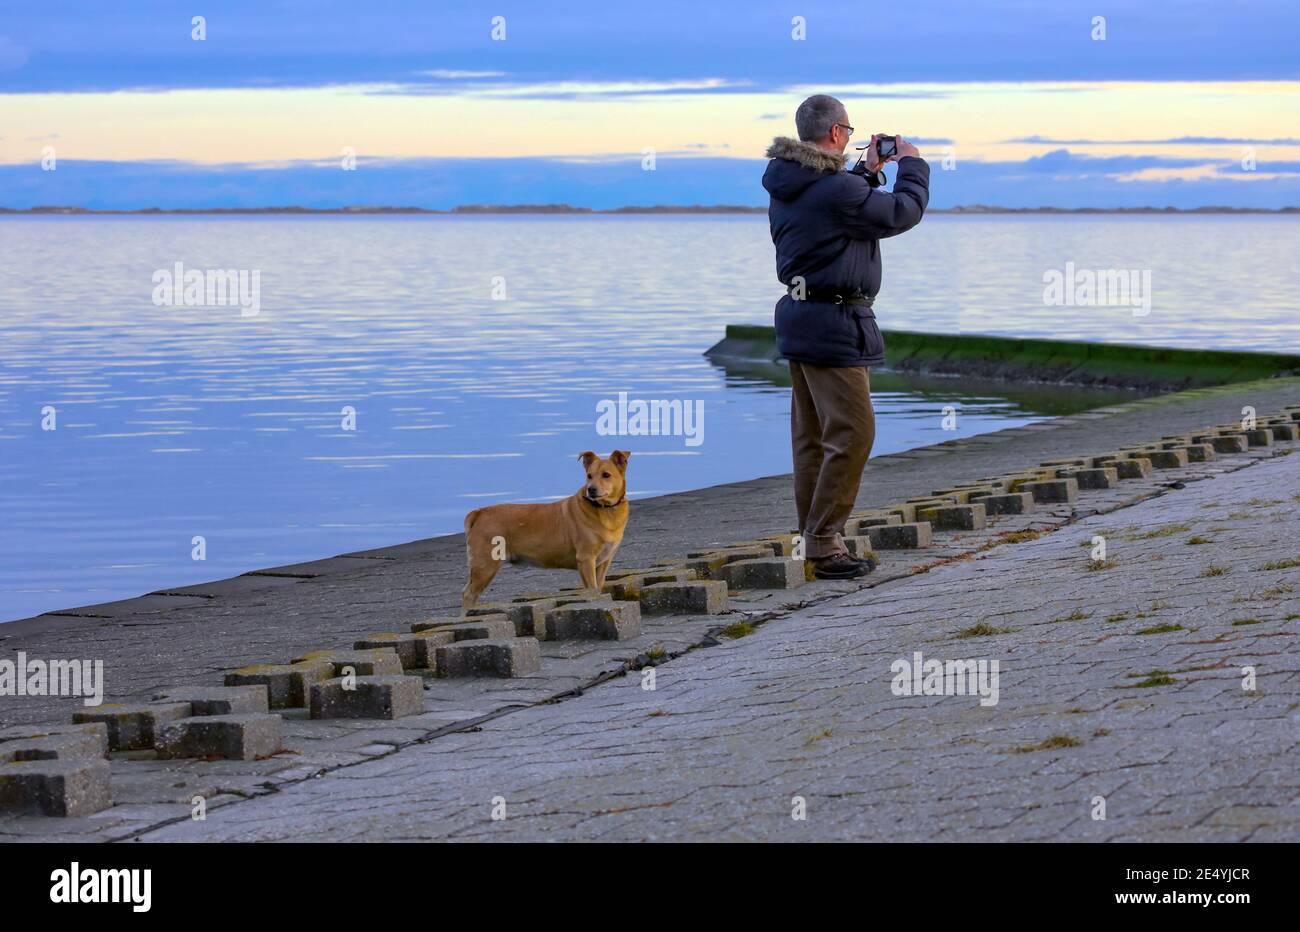 Un homme prend une photo au bord de la mer du Nord. Son chien regarde dans une autre direction. Tout le monde peut profiter de la mer à sa façon. Banque D'Images